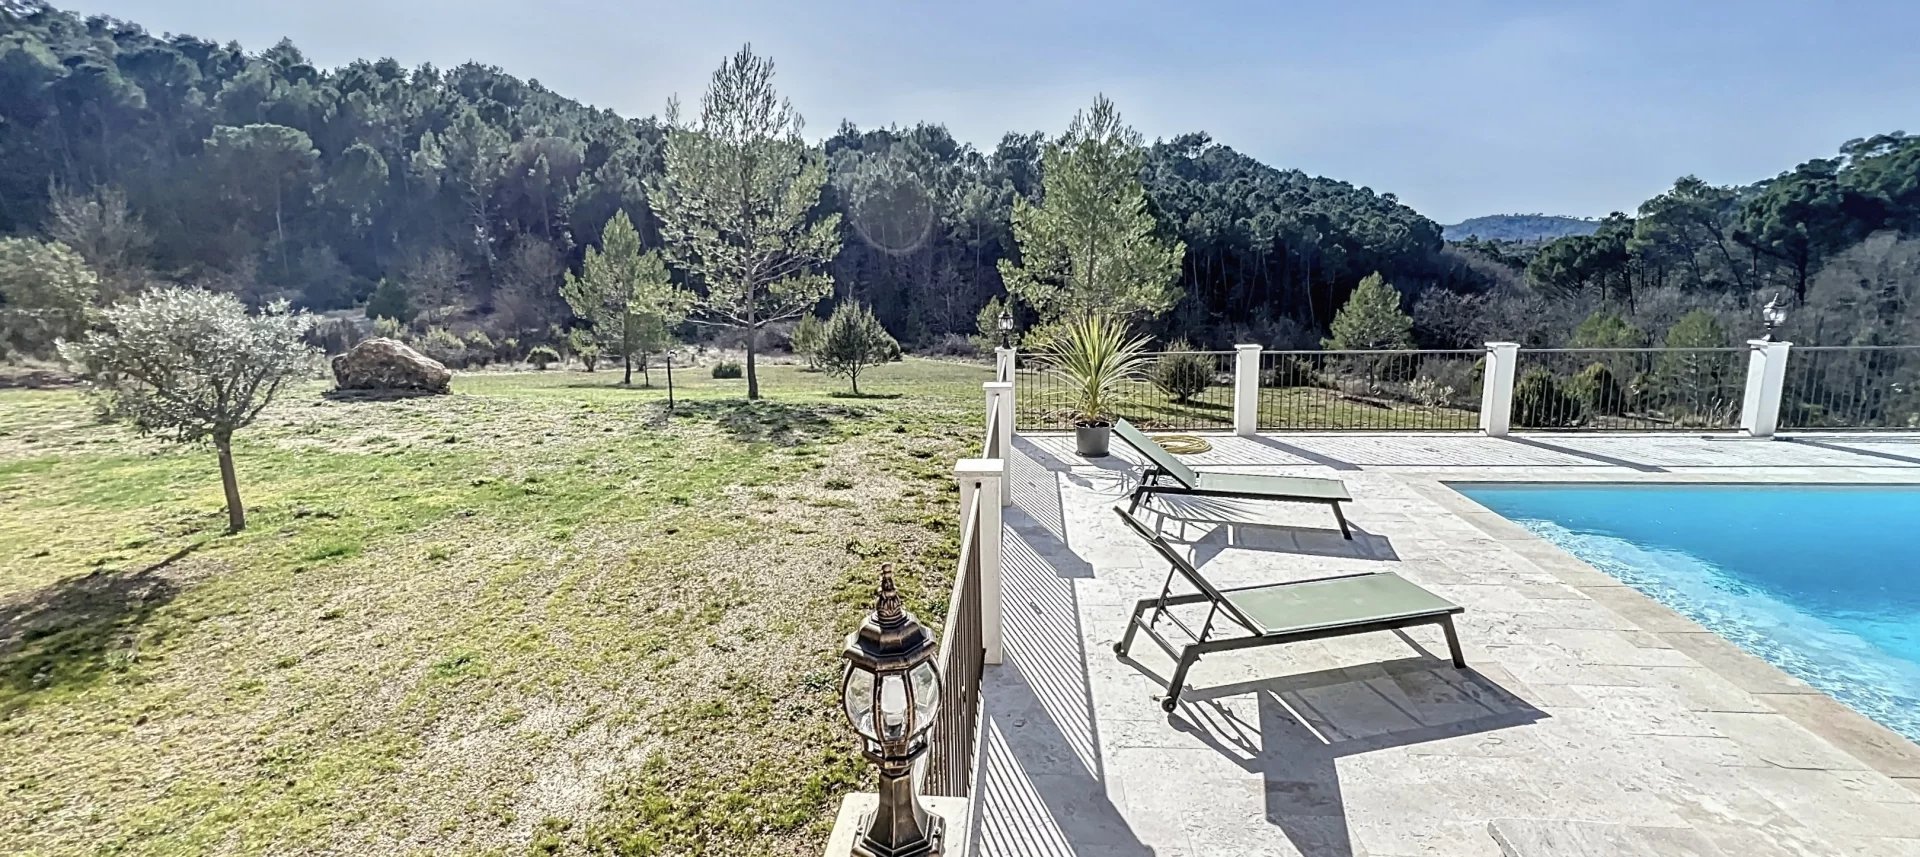 Calmness, 2,5 hectare, atypic architect's villa